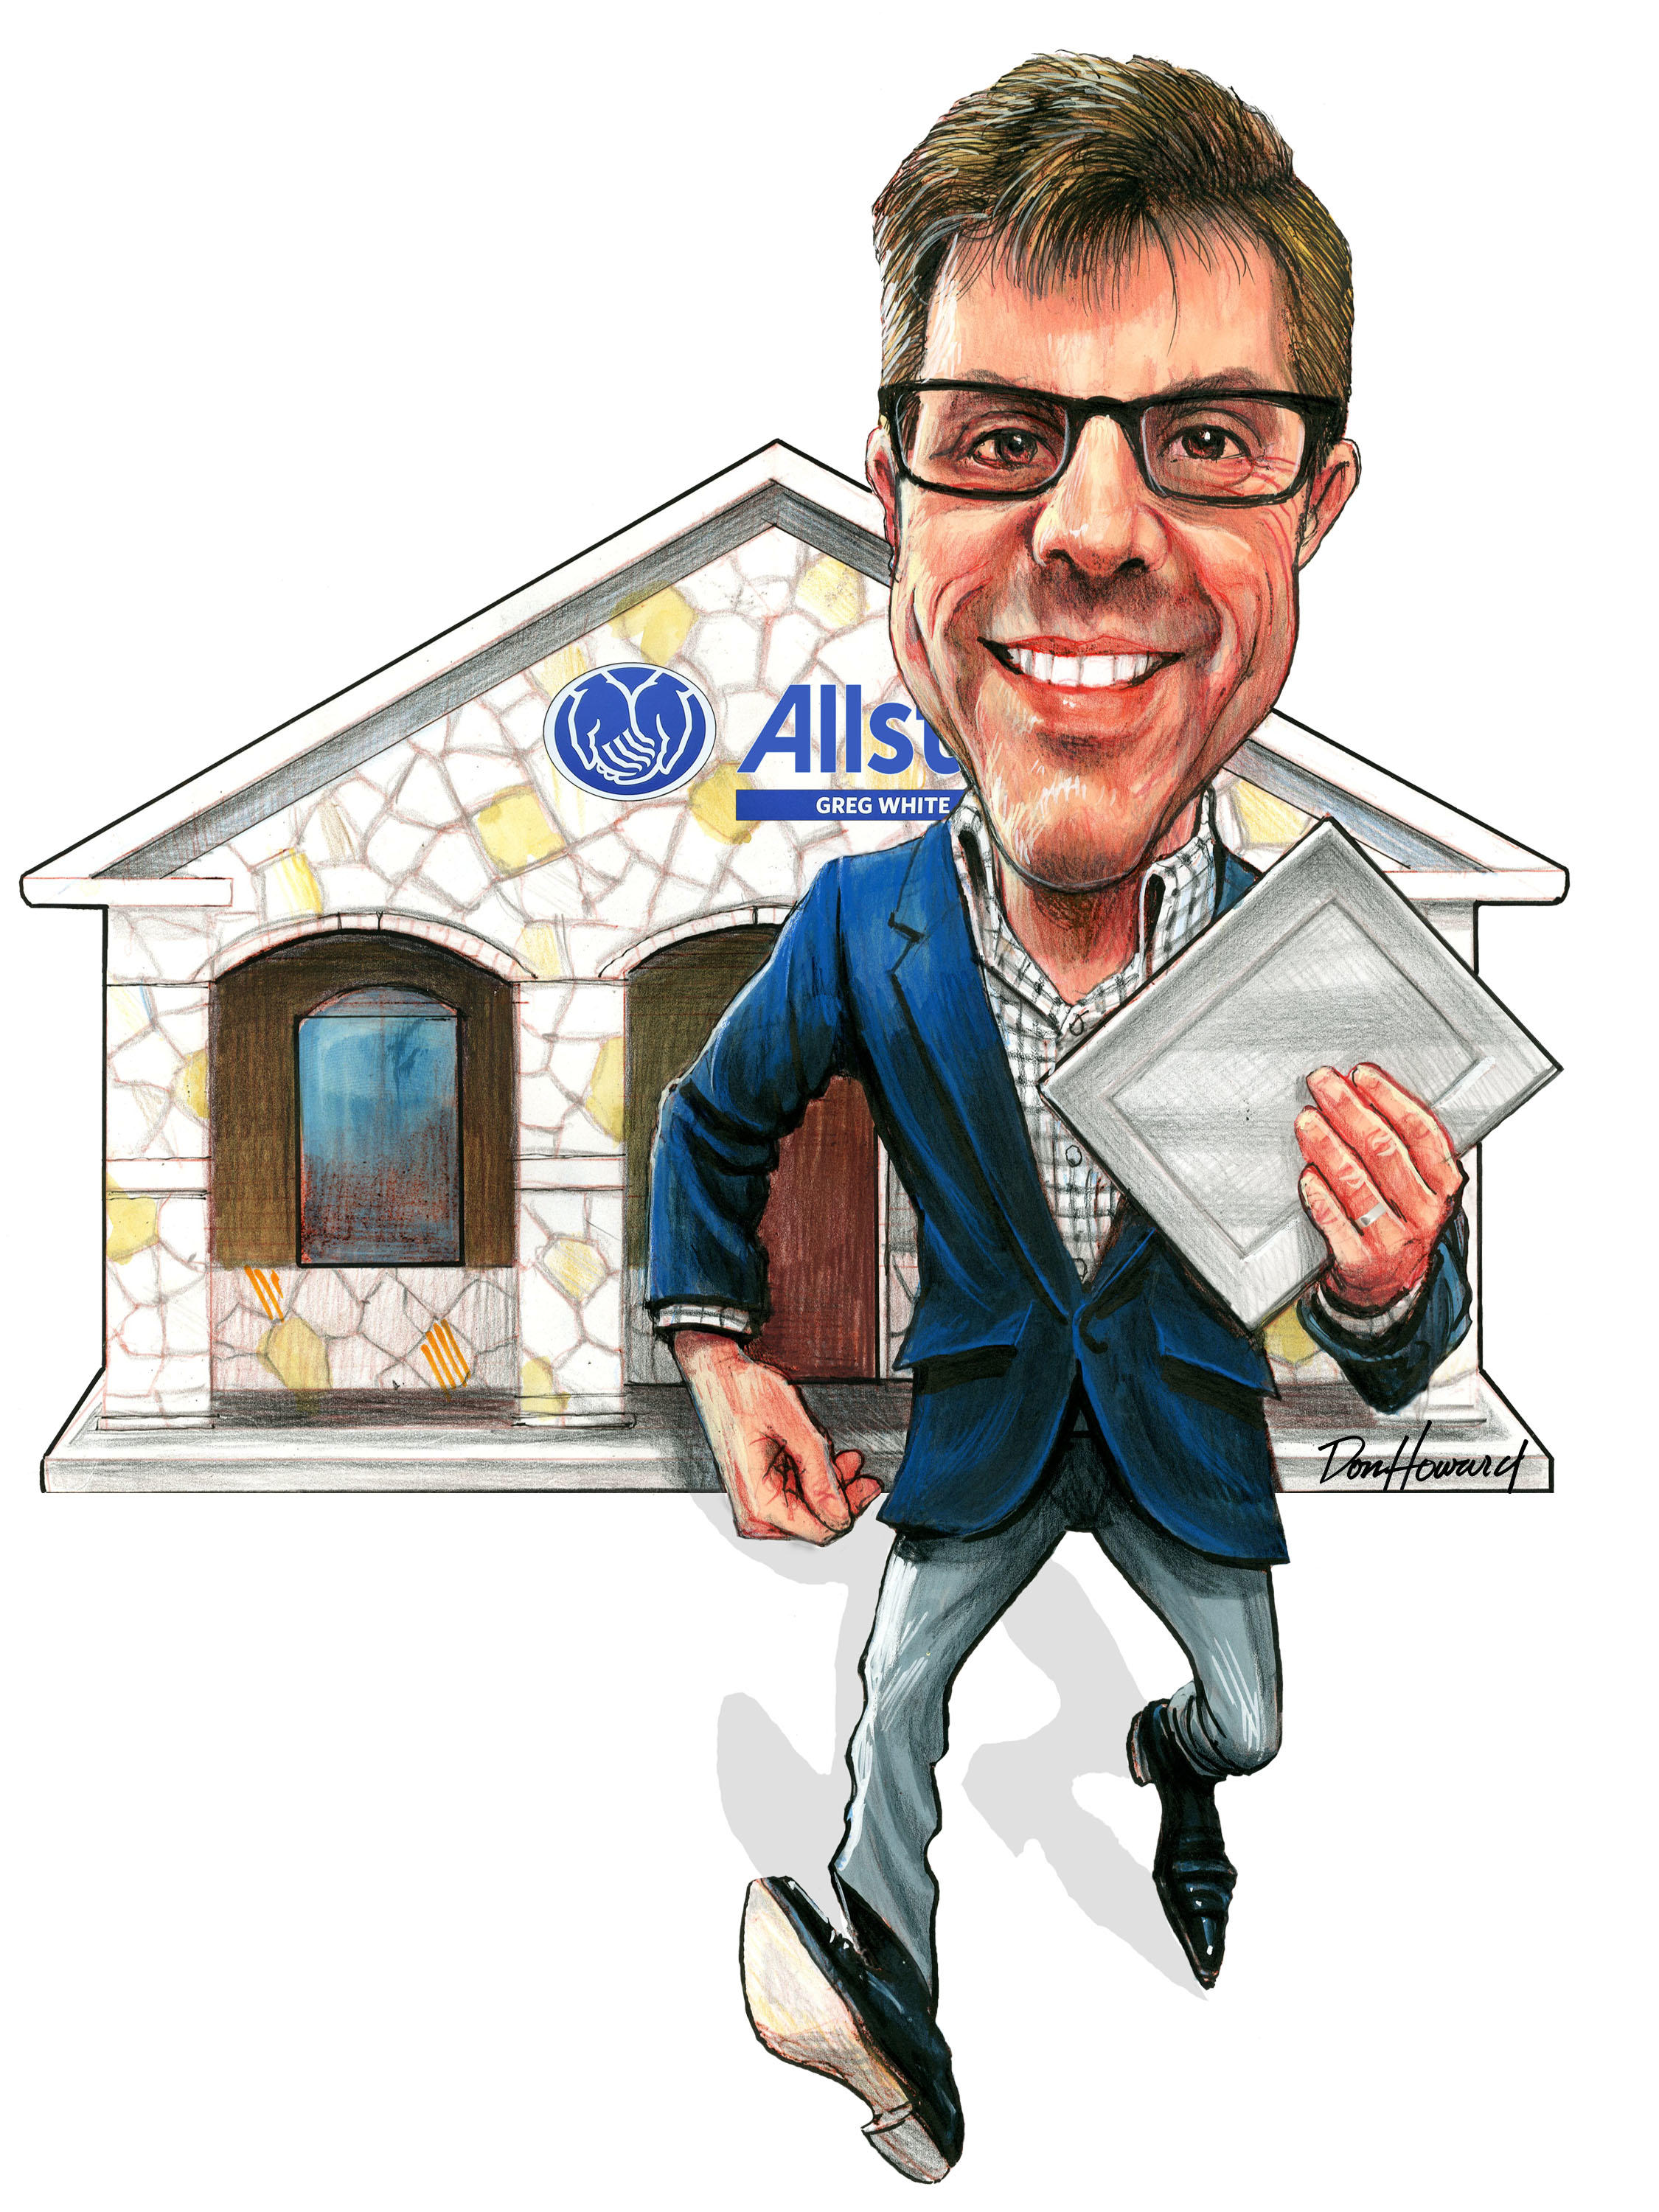 Image 11 | Greg White: Allstate Insurance